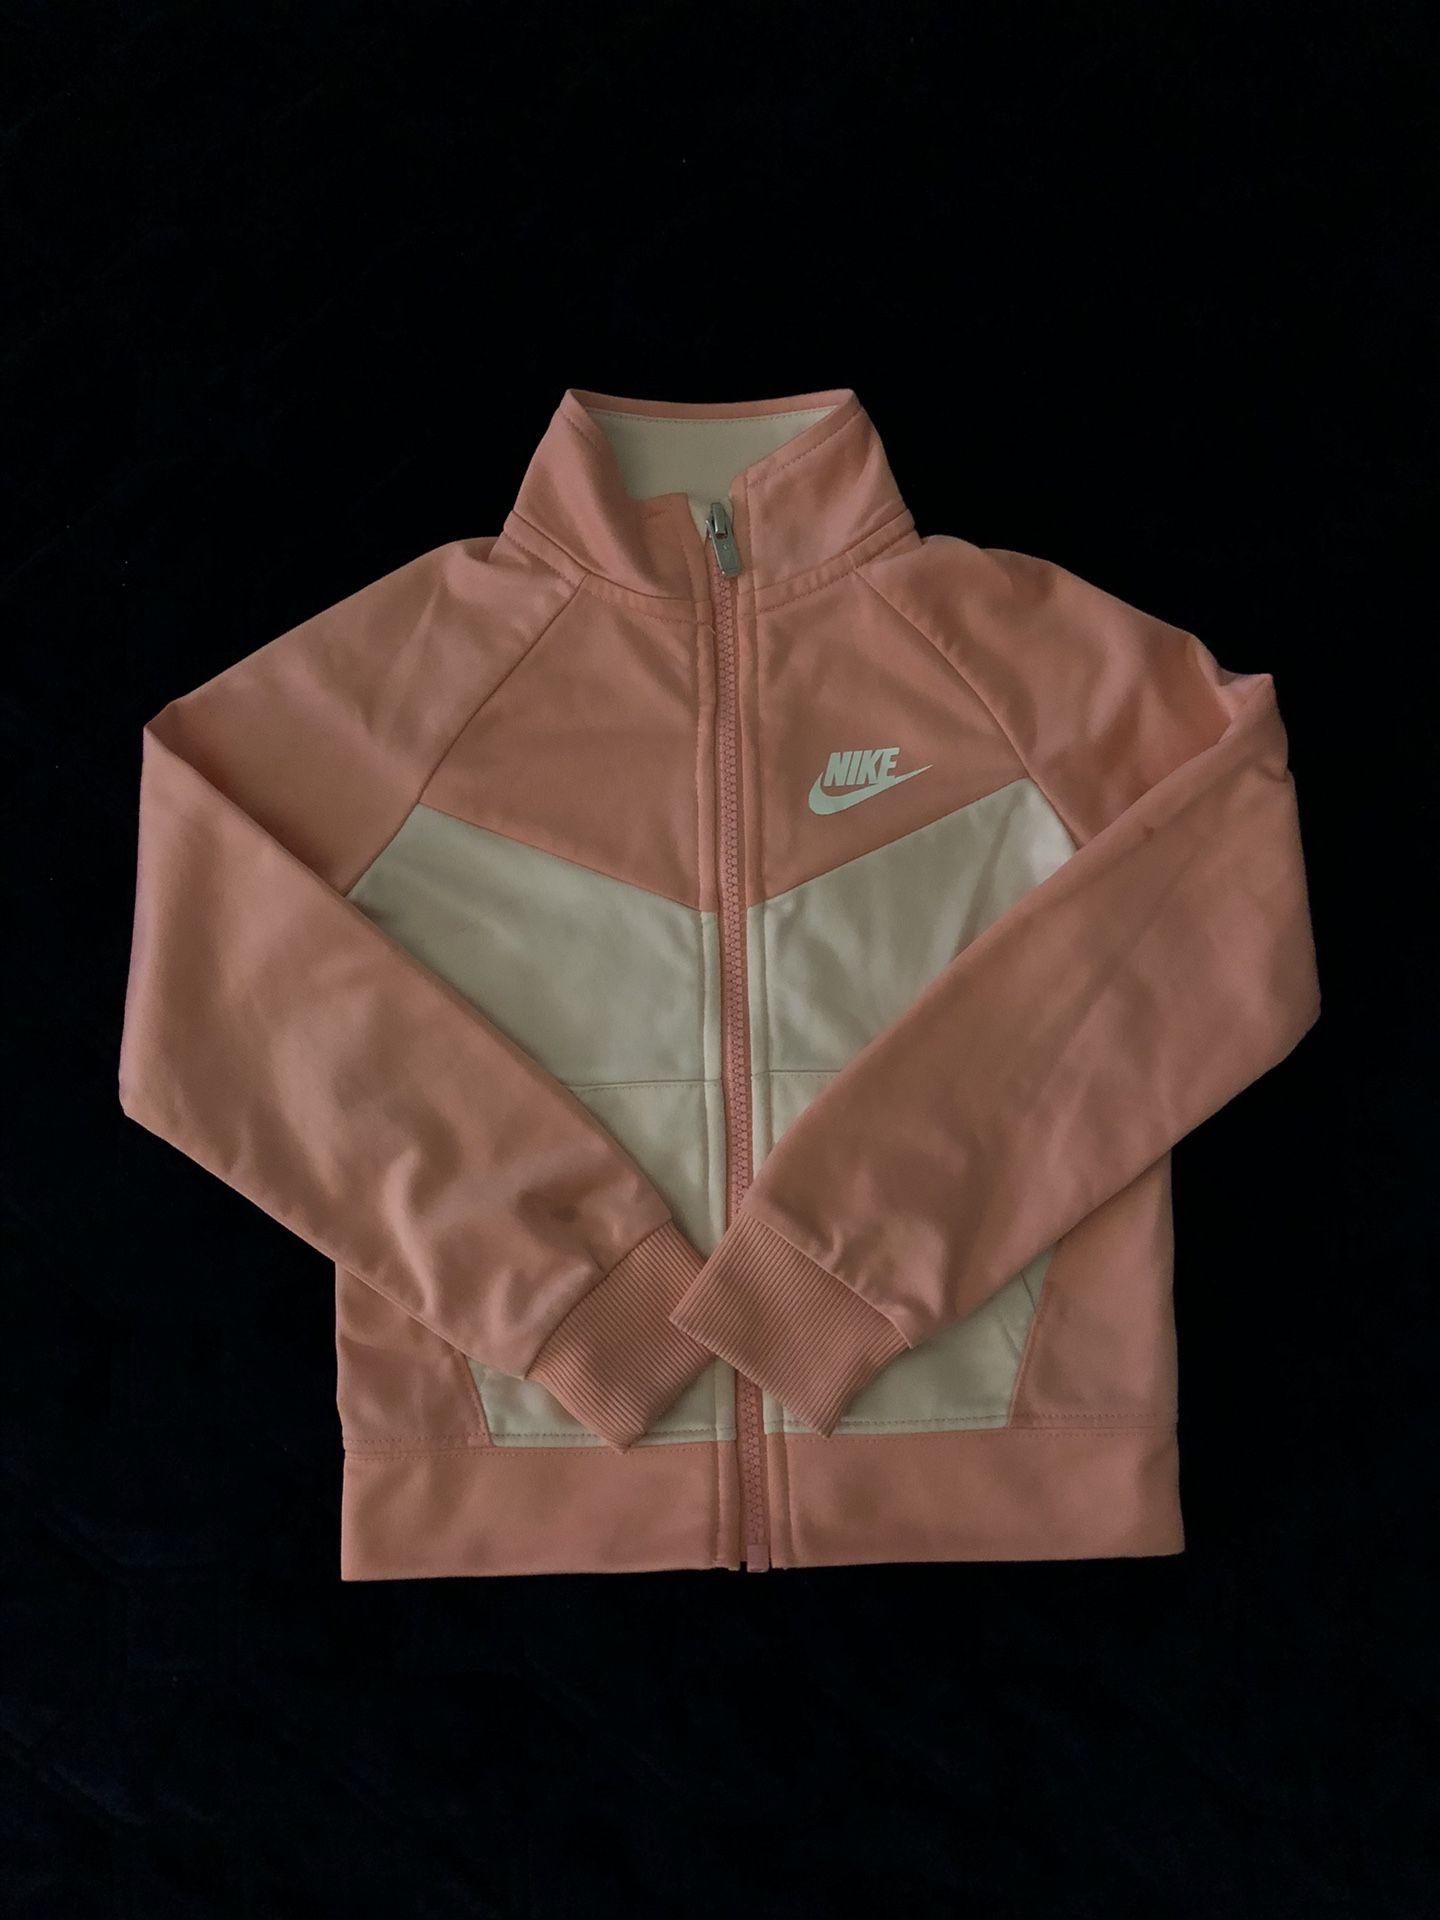 Nike Fleece Cotton Blend Zip Jacket Girls size 4T